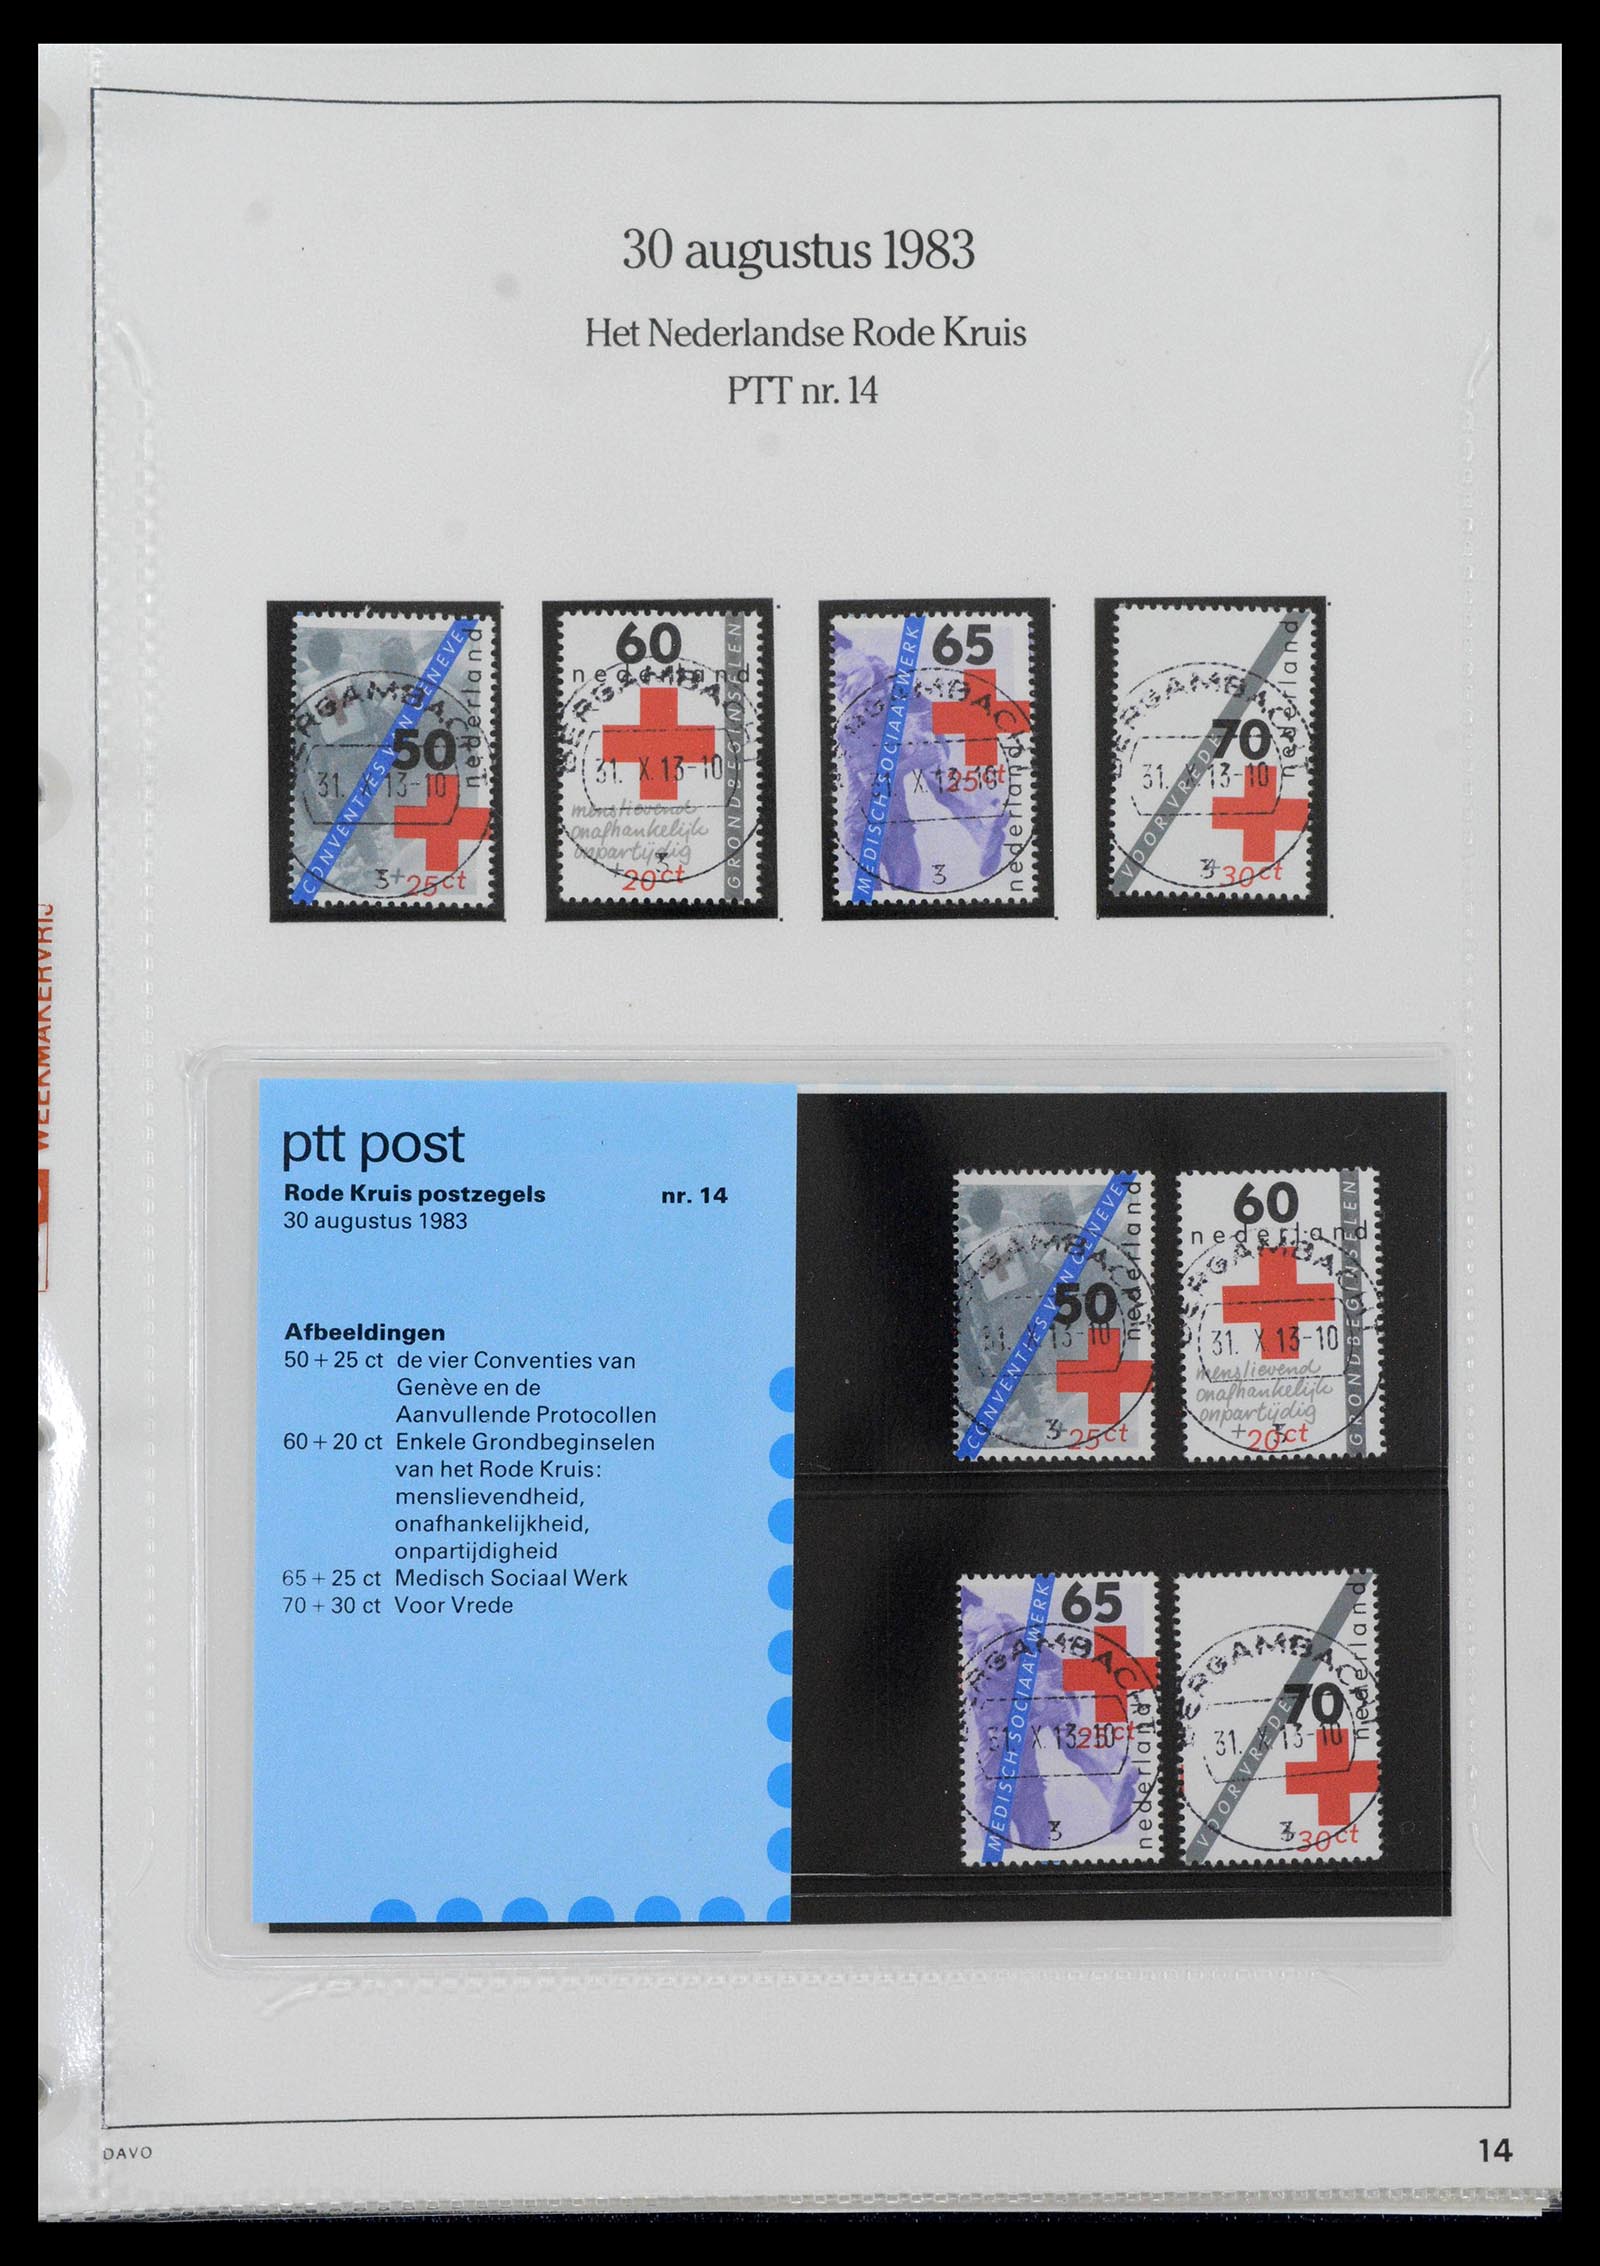 39121 0014 - Stamp collection 39121 Netherlands presentationpacks 1982-2001.